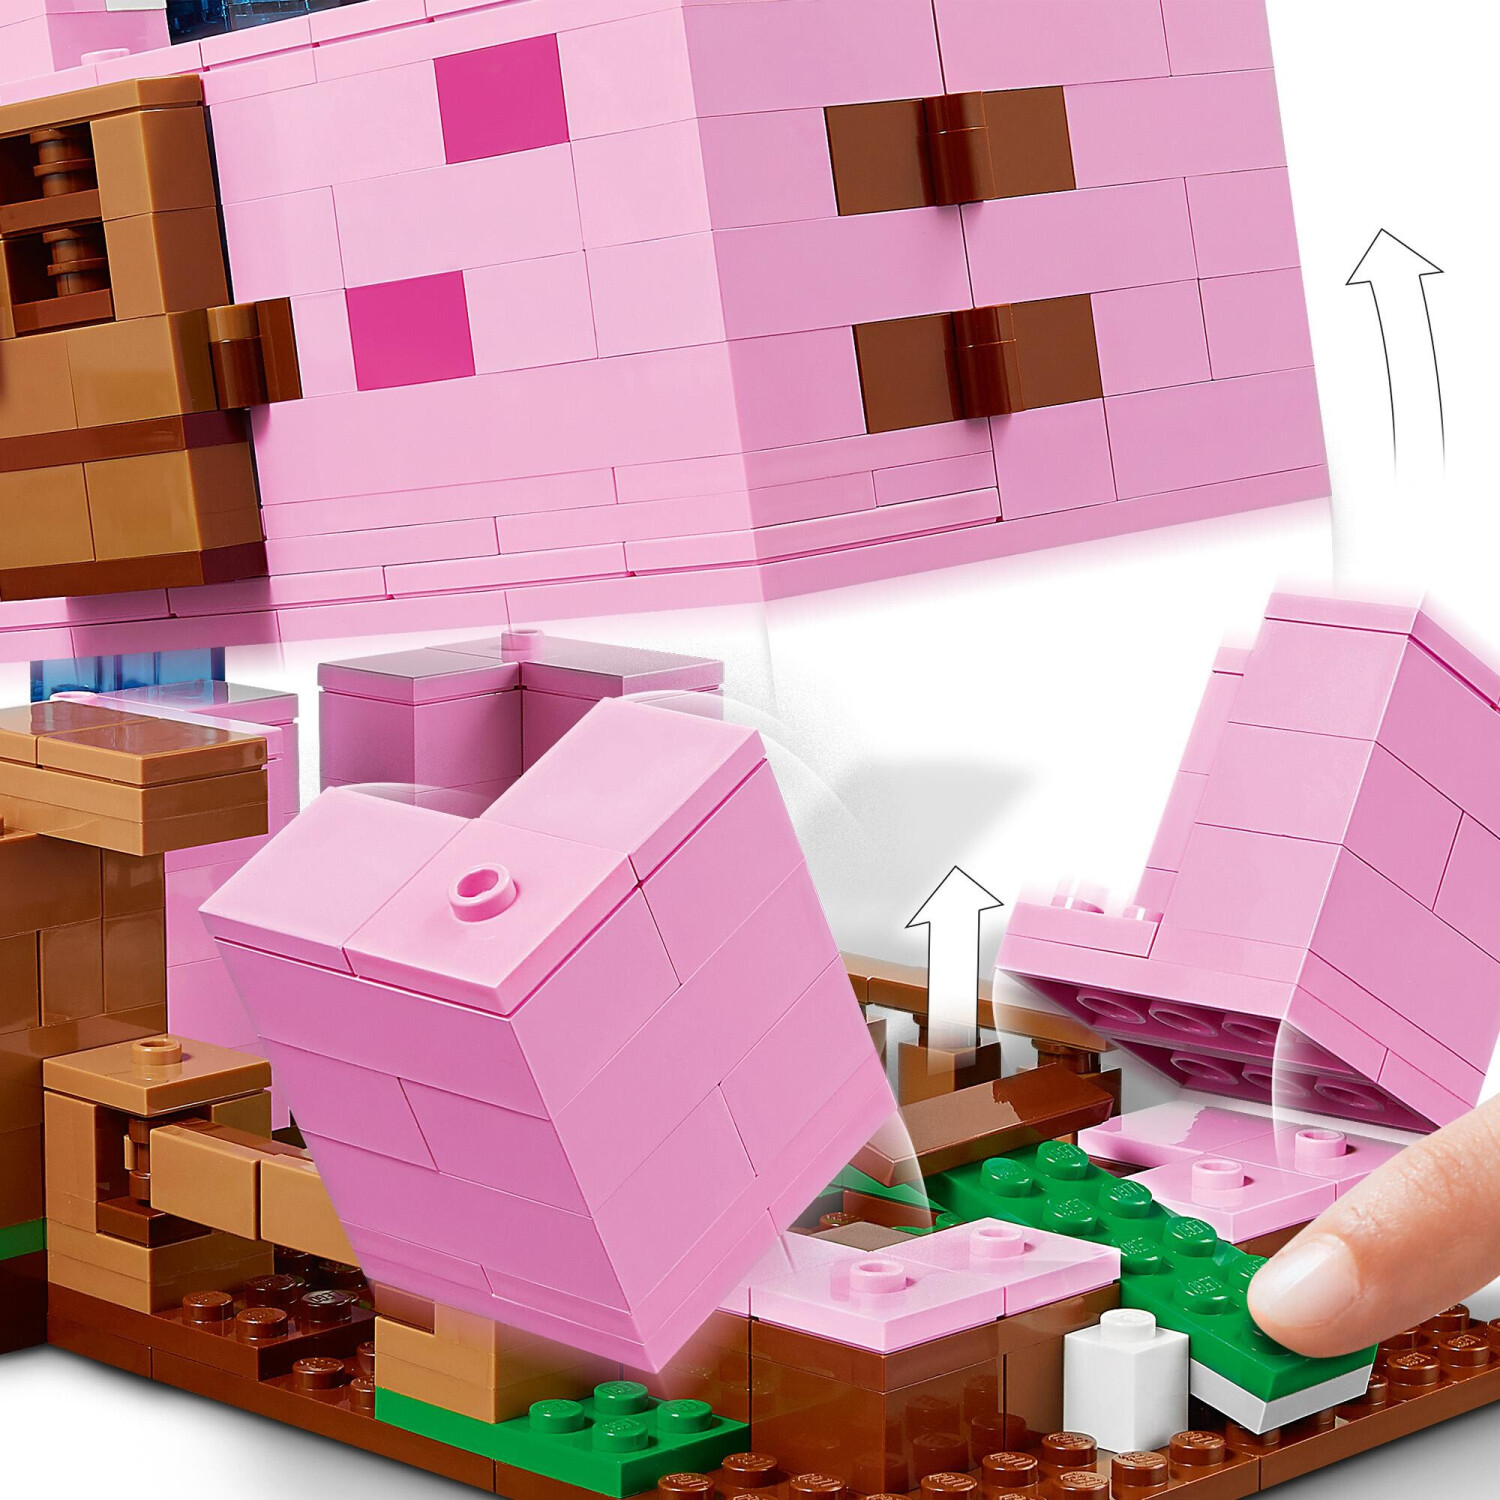 LEGO Minecraft La Maison Cochon - 490 pièces - 8 ans et plus